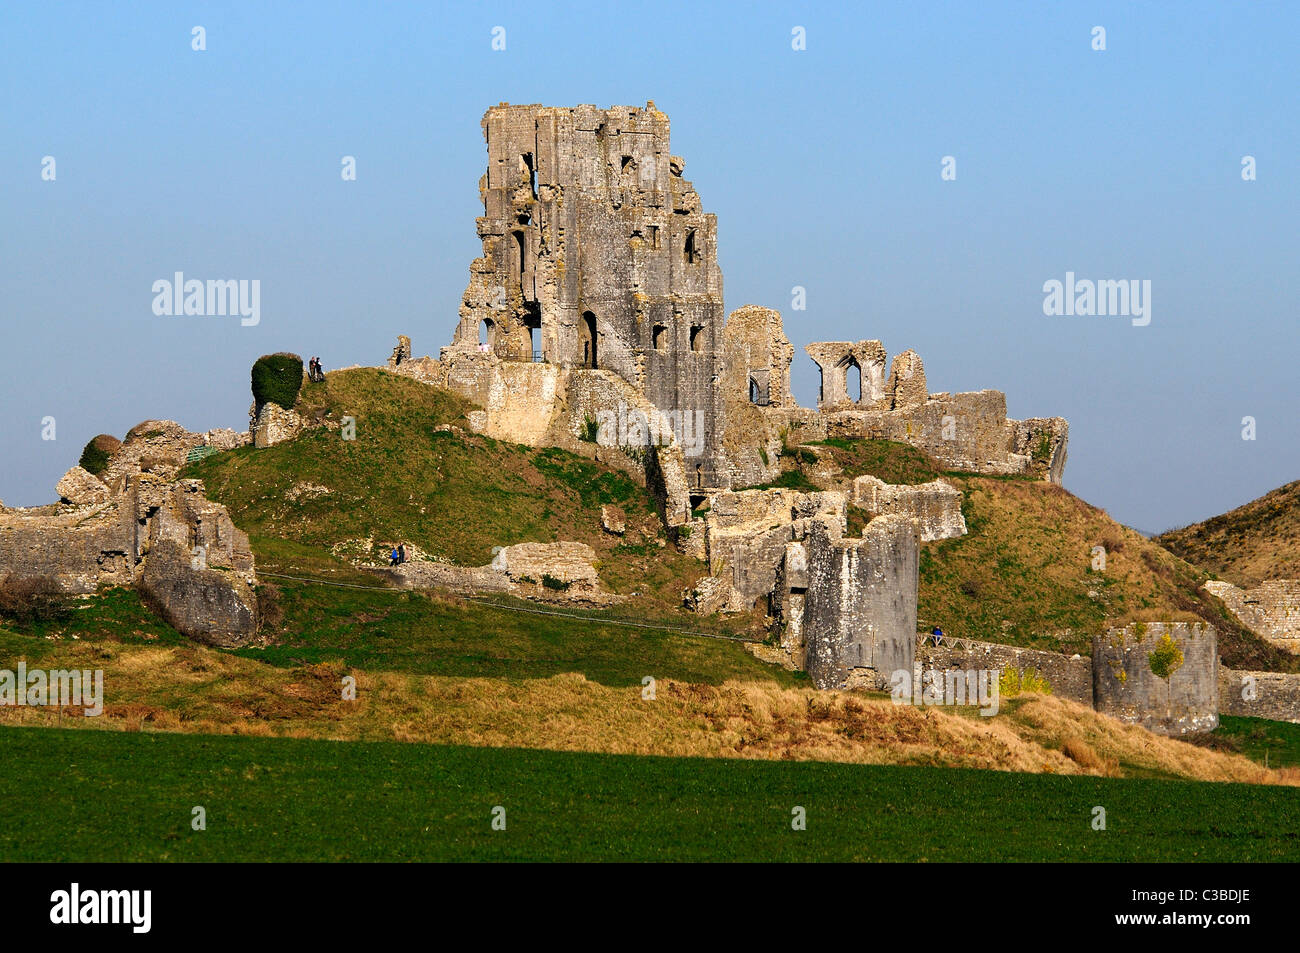 Le reste du château de Corfe dans l'île de Purbeck Dorset UK Banque D'Images